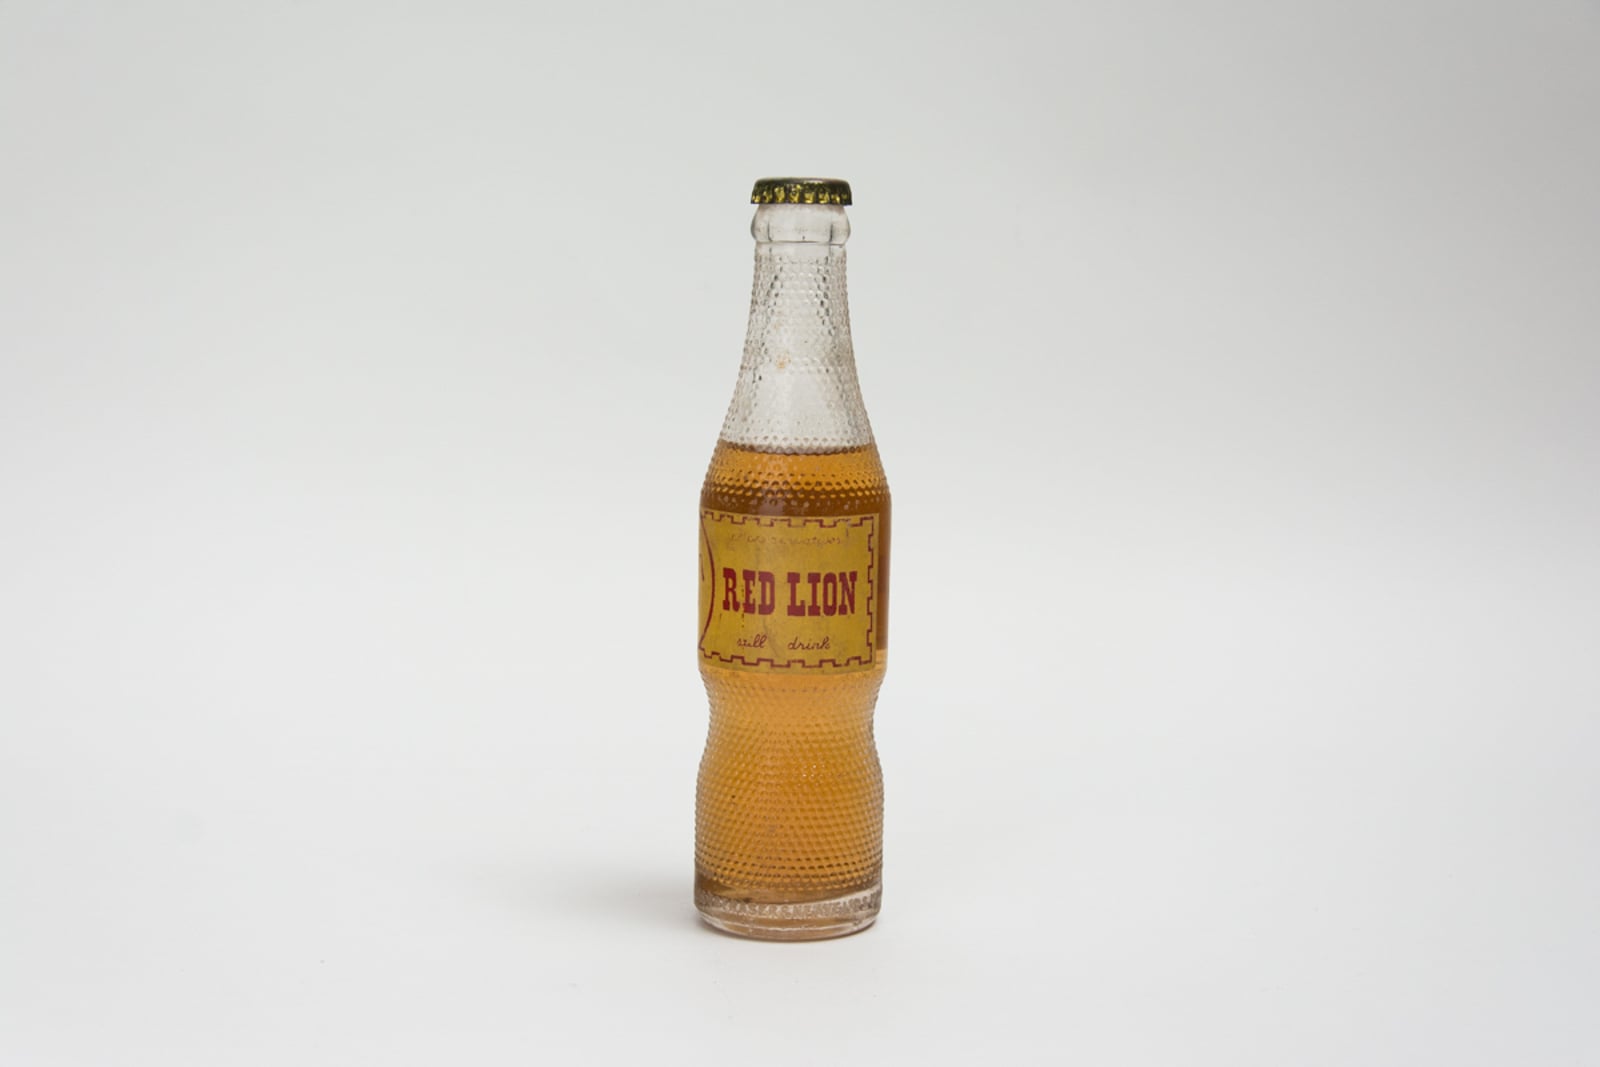 F&N Red Lion Vintage Bottle